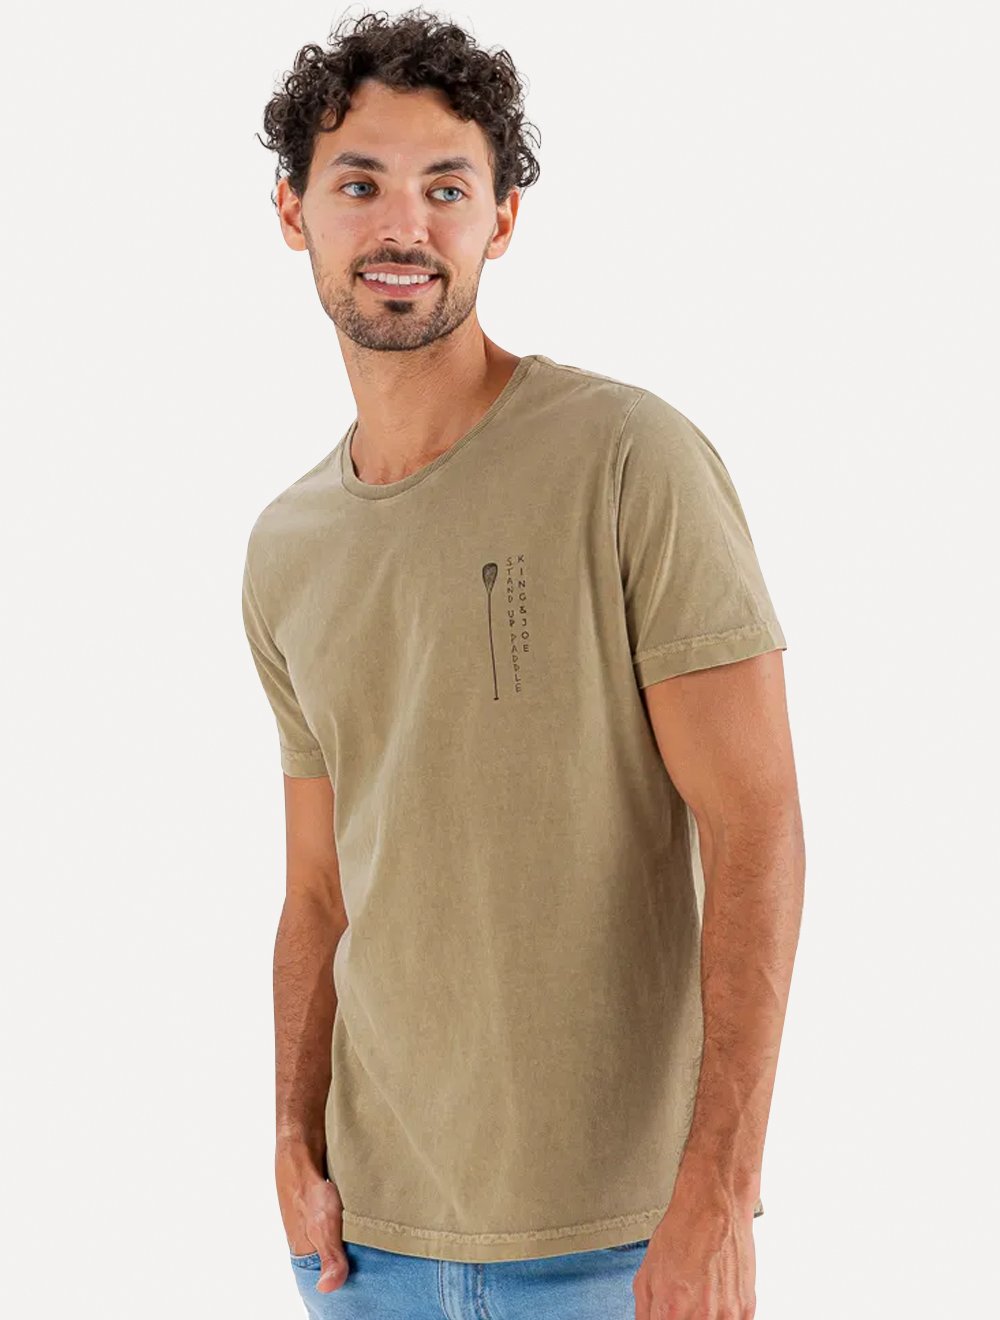 Camisas Everlane Original no Brasil com Preço de Outlet